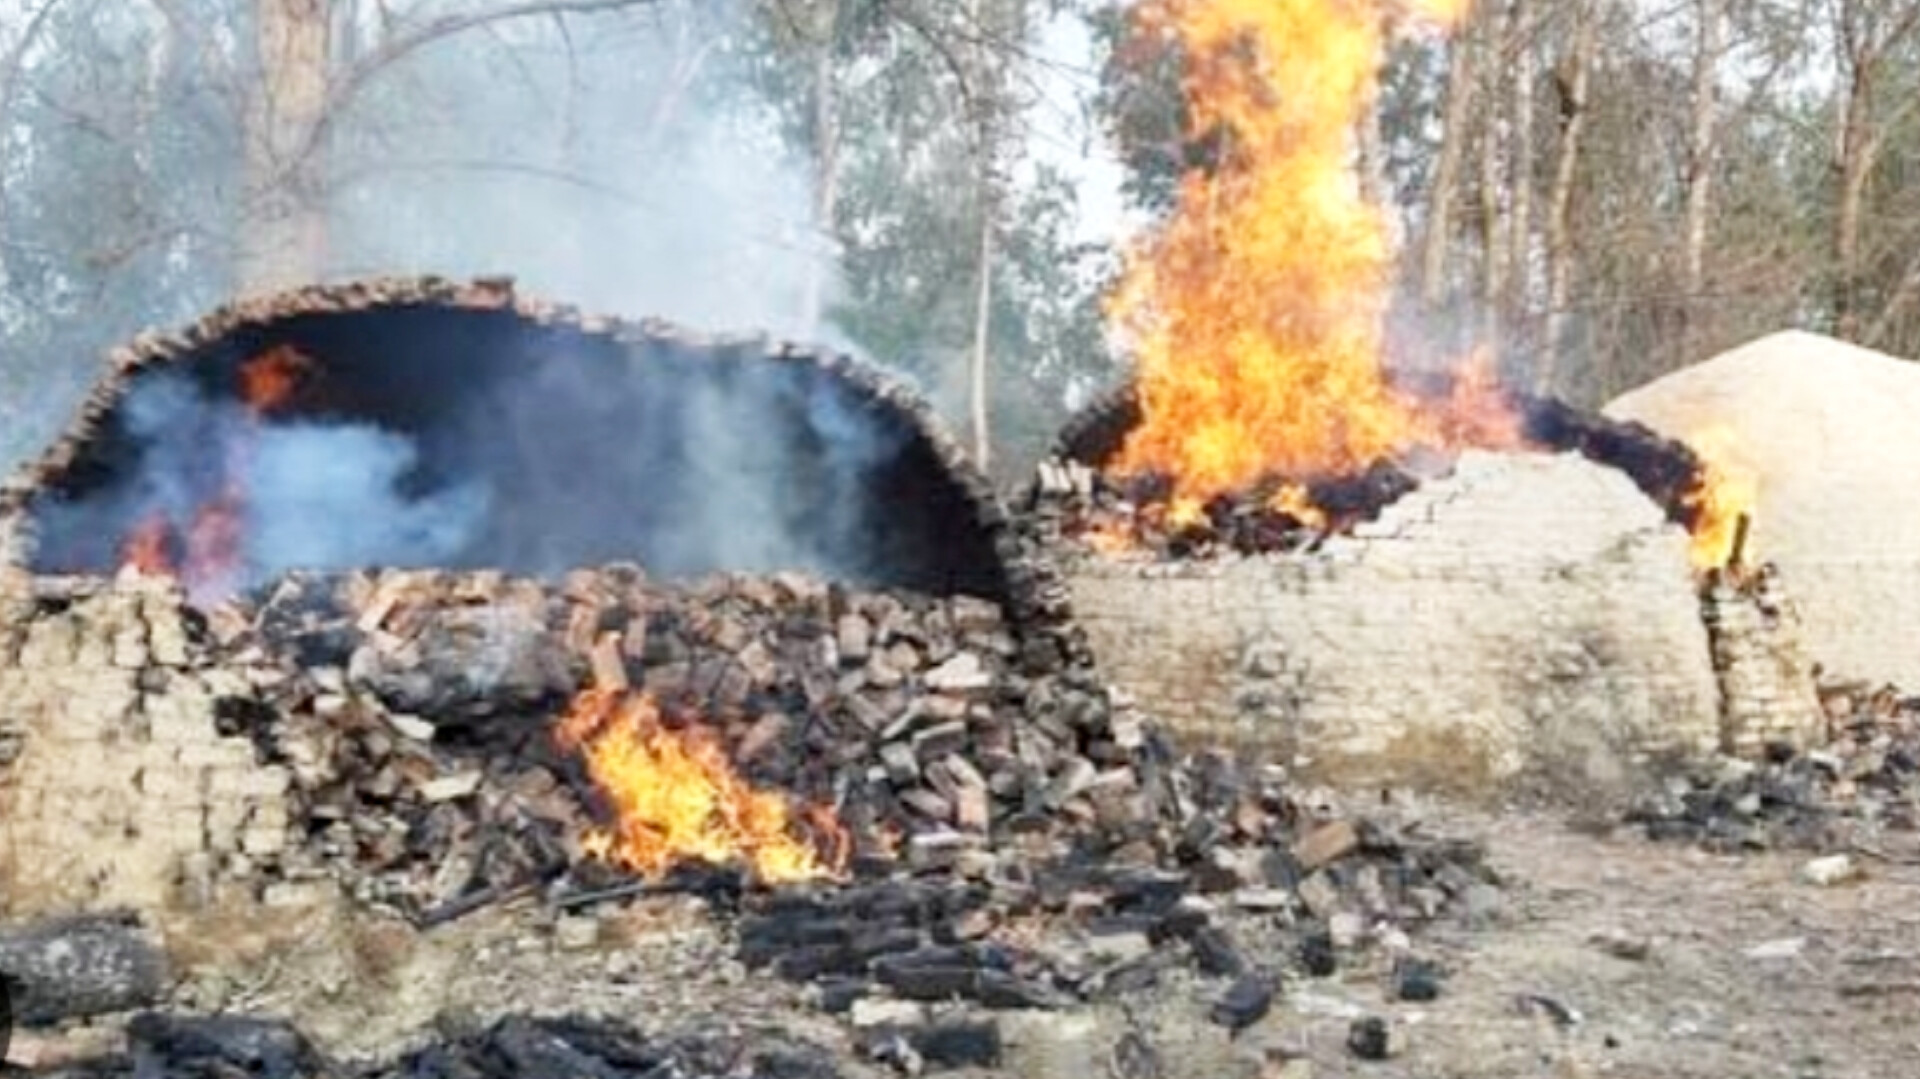 हरदोई में वन दरोगा की पिटाई के बाद अवैध कोयला भट्ठियां तोड़ी गई